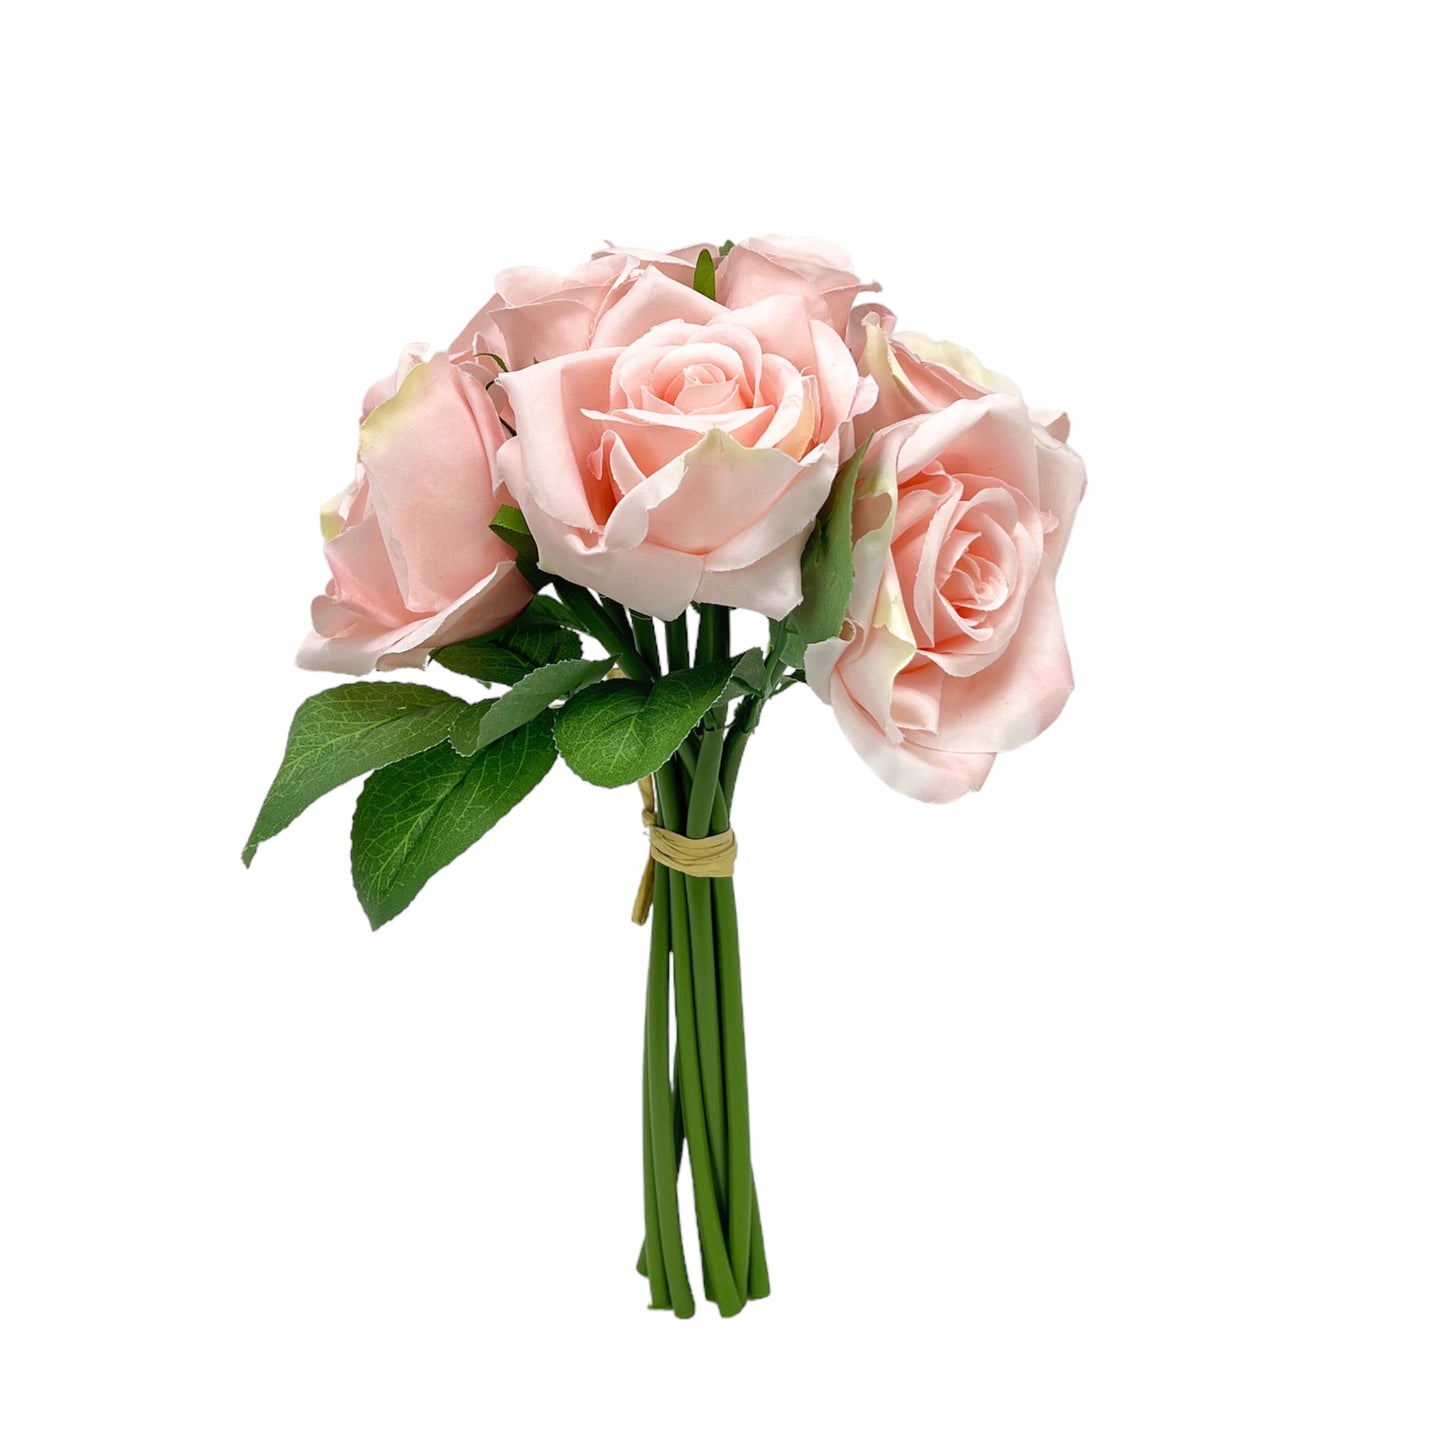 Exquisite Artificial Rose Arrangement Diverse Color Options